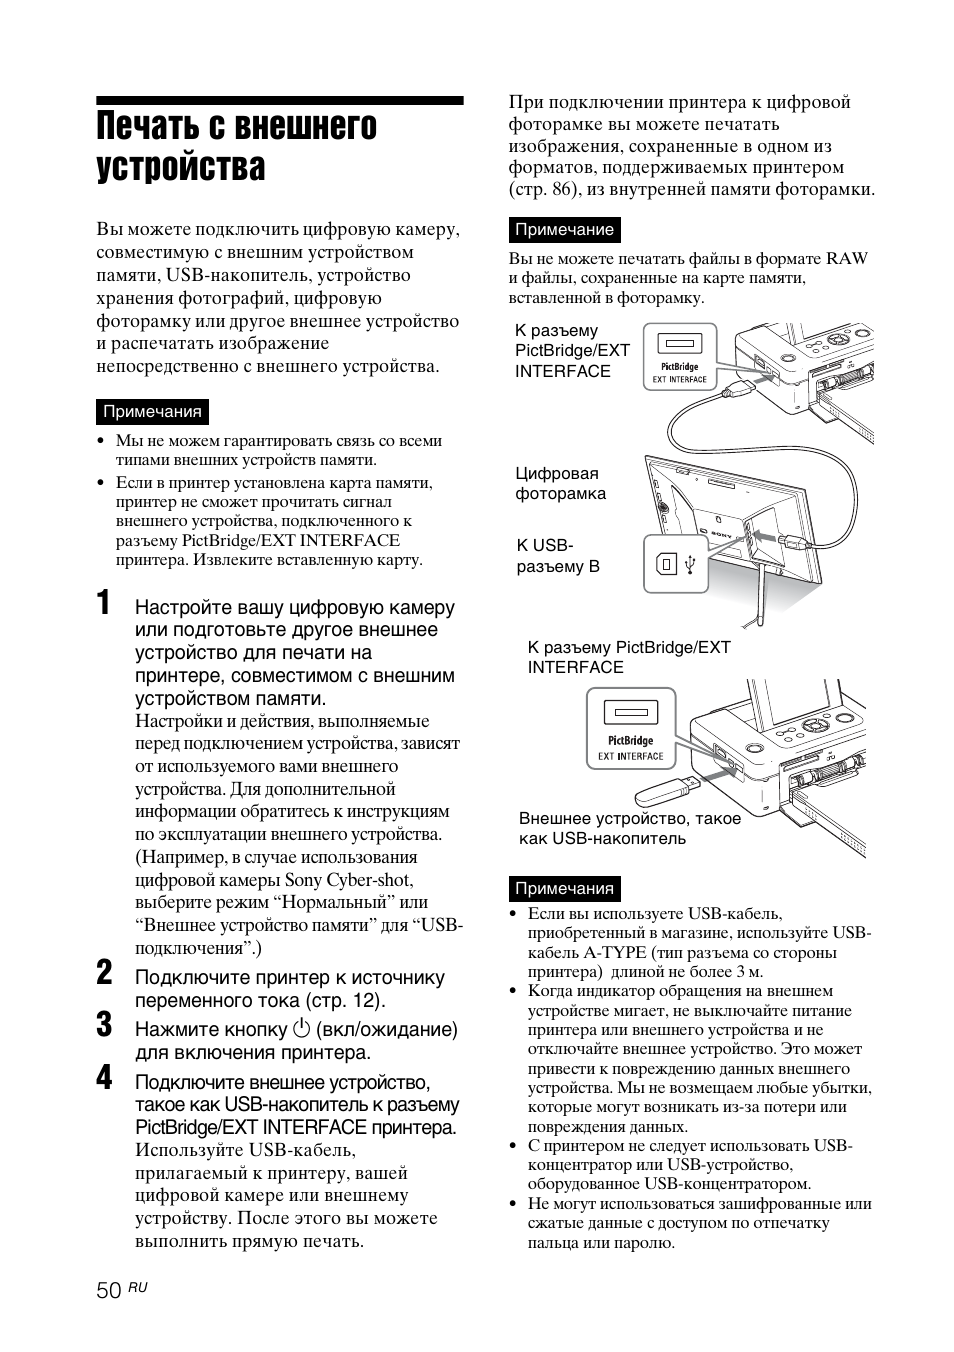 Печать с внешнего устройства, С 50 | Инструкция по эксплуатации Sony DPP-FP97 | Страница 50 / 92